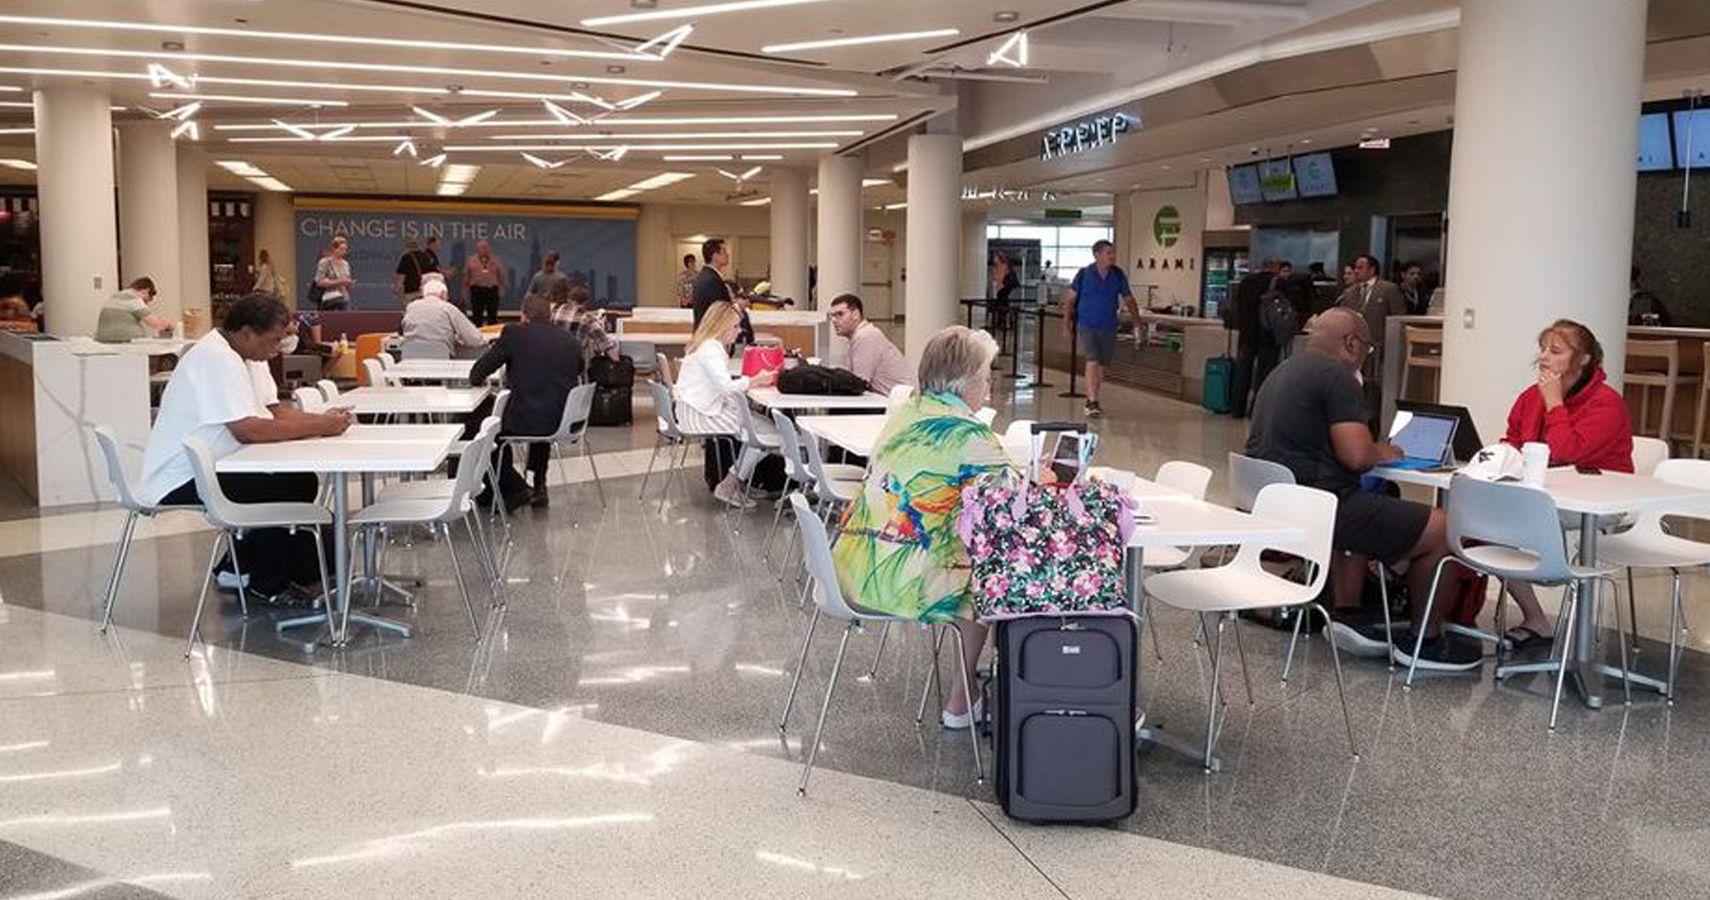 Aeroporto Midway de Chicago abre nova praca de alimentacao com